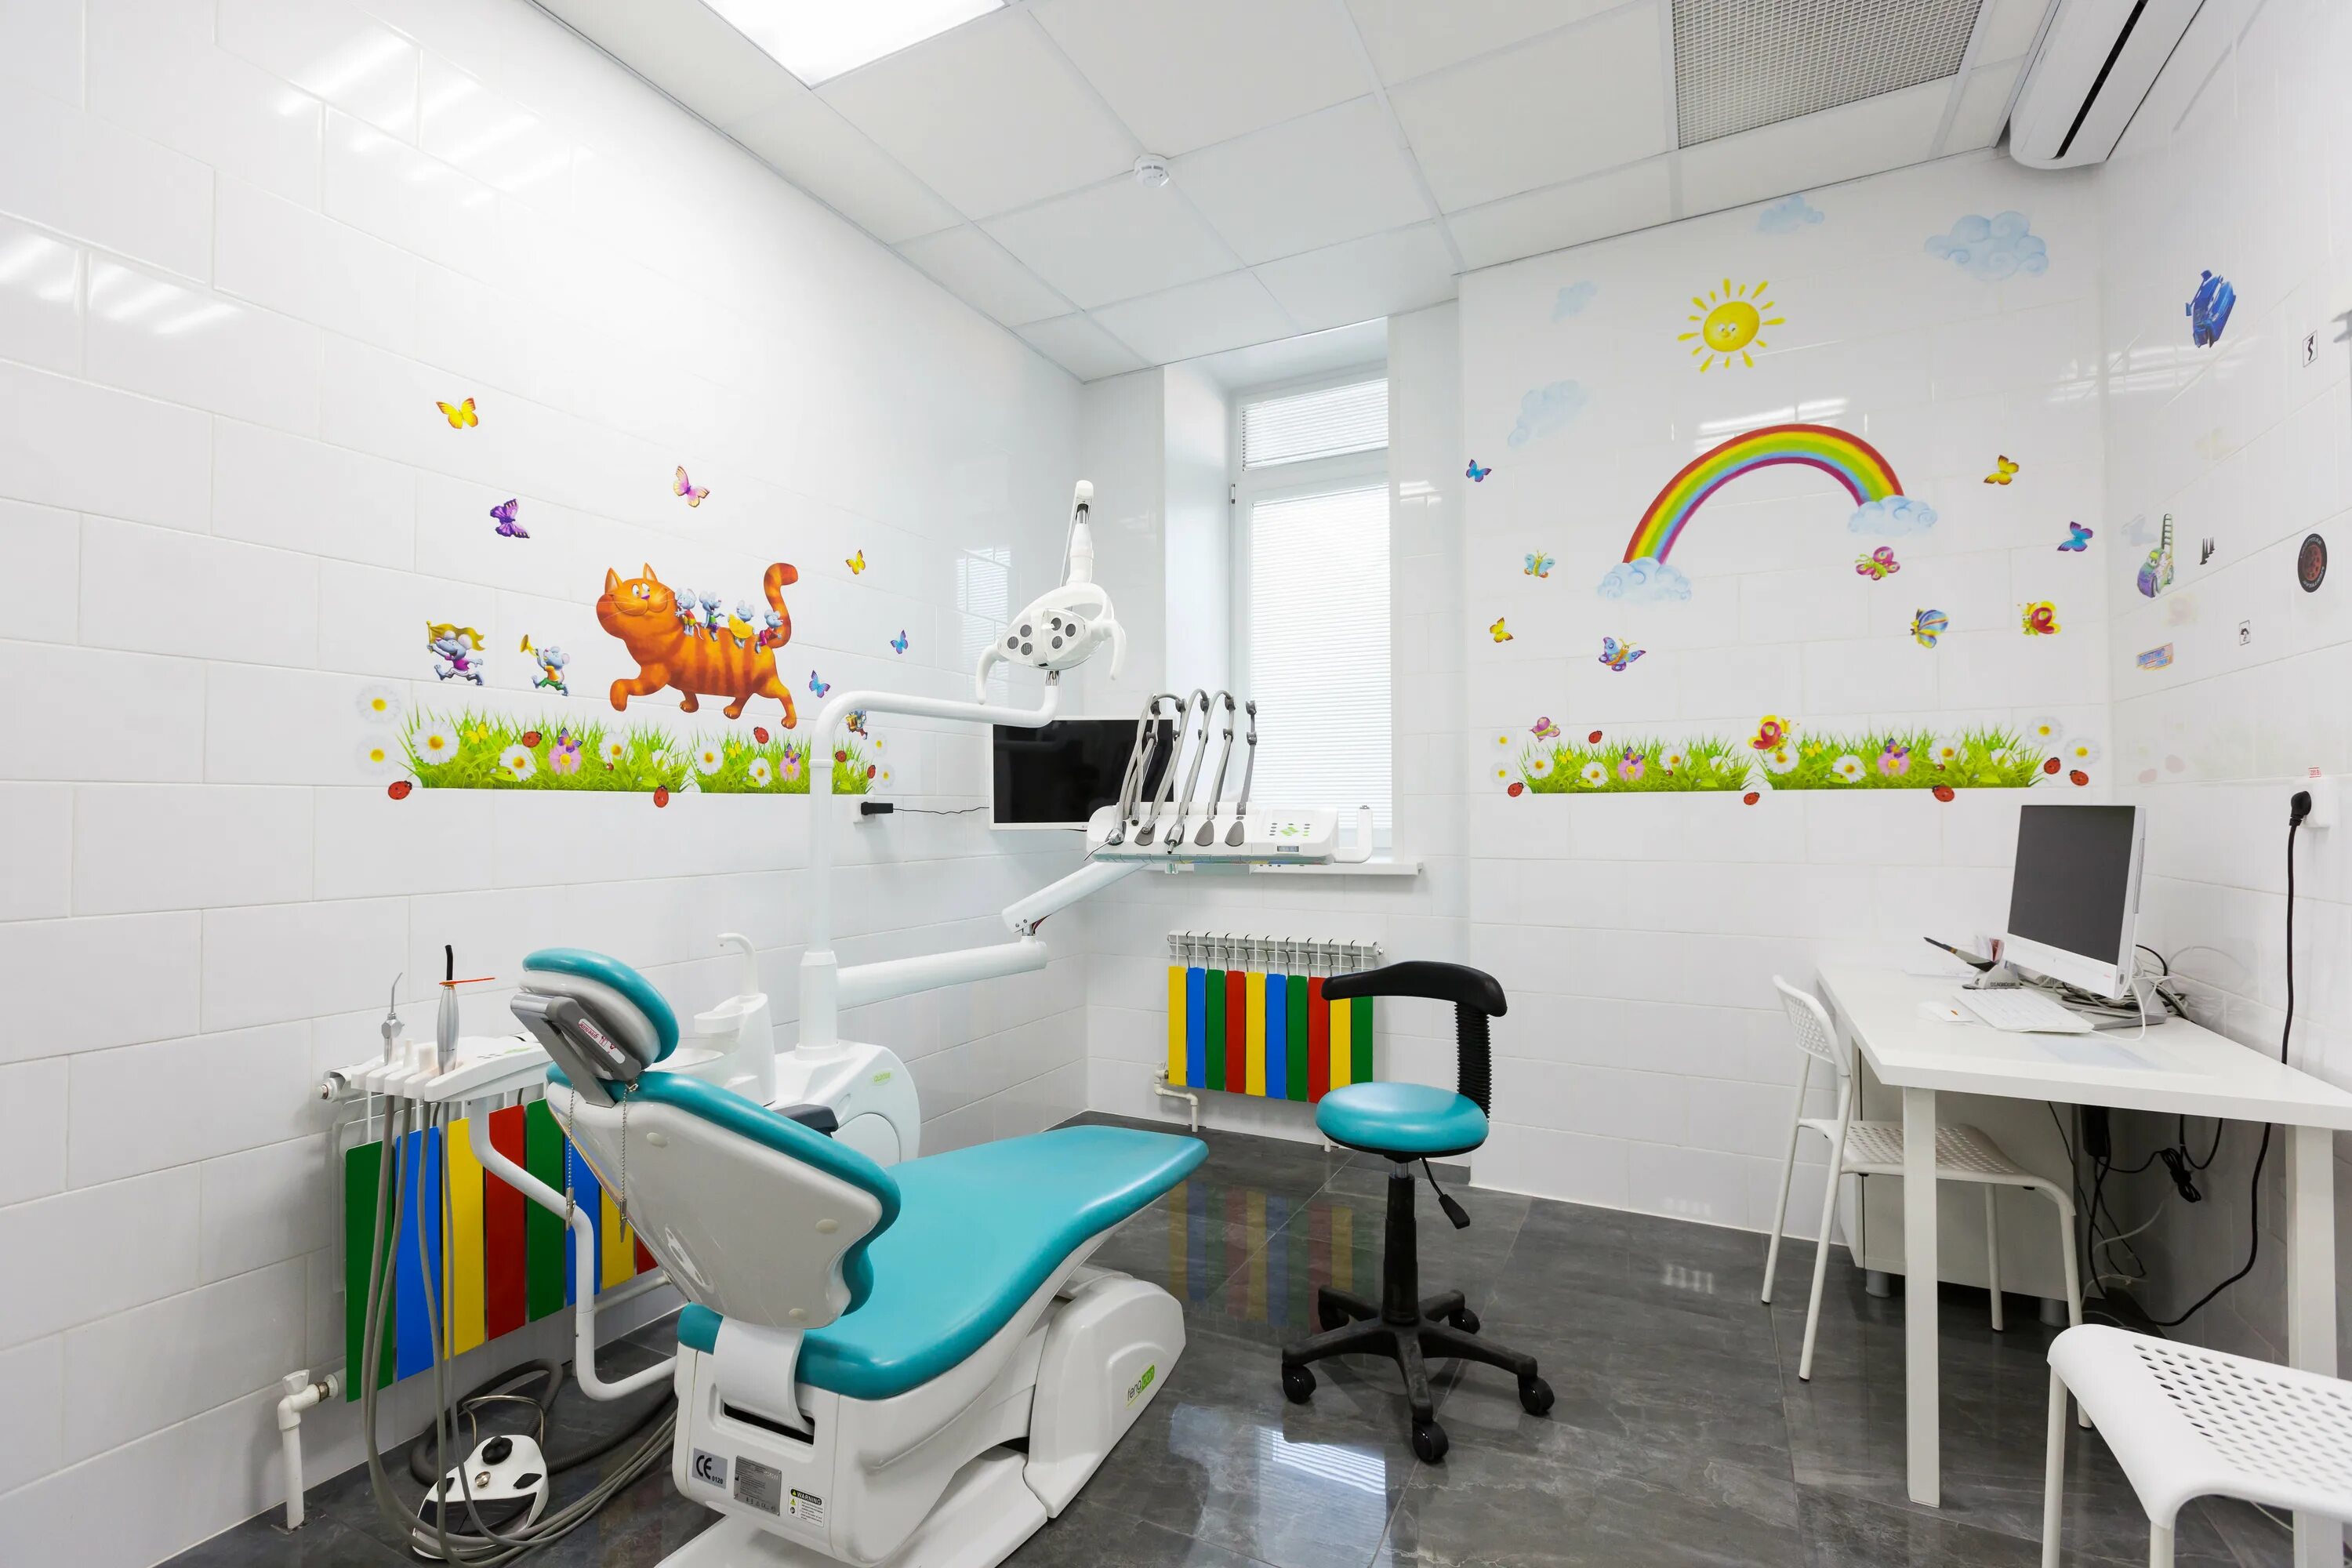 Гоголя 78 Уфа стоматология. Детская стоматологическая клиника 7 Уфа. Детский стоматологический кабинет. Кабинет детского стоматолога.